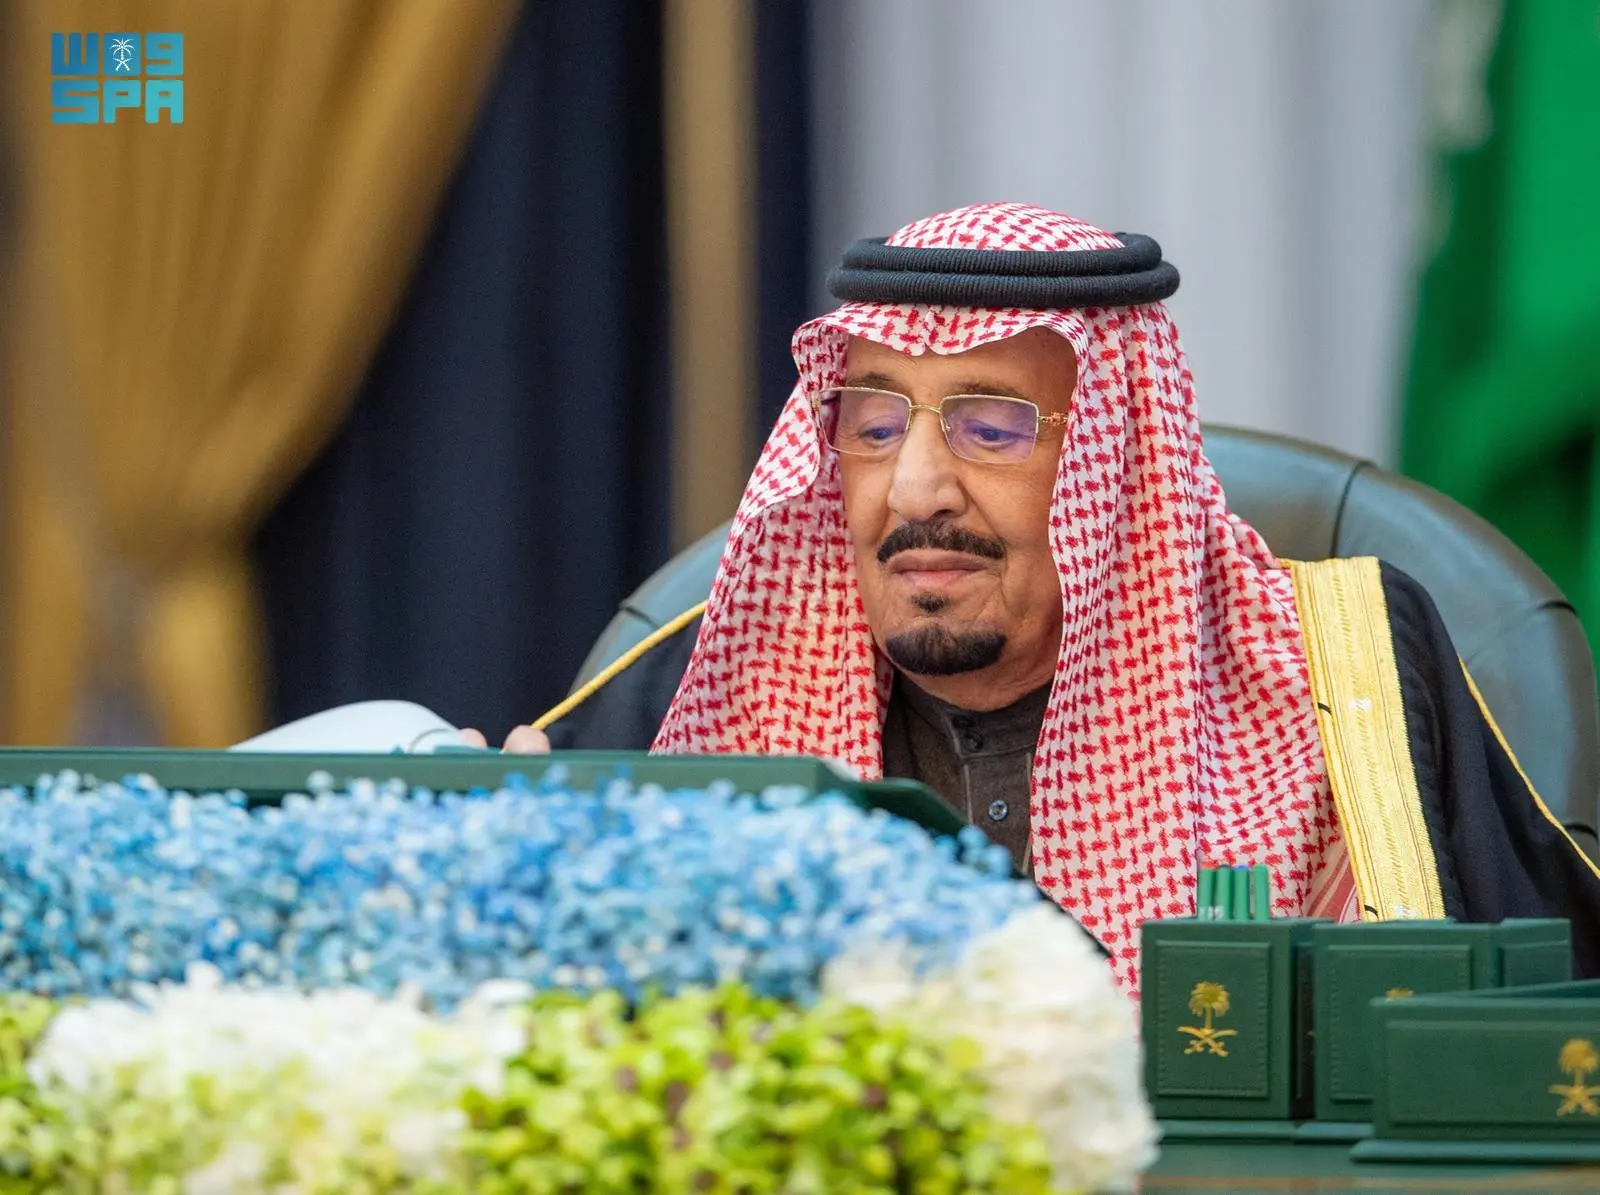 مجلس الوزراء يوافق على نظام حماية المبلّغين والشهود والخبراء والضحايا، وكذلك الموافقة على تنظيم الهيئة السعودية للسياحة